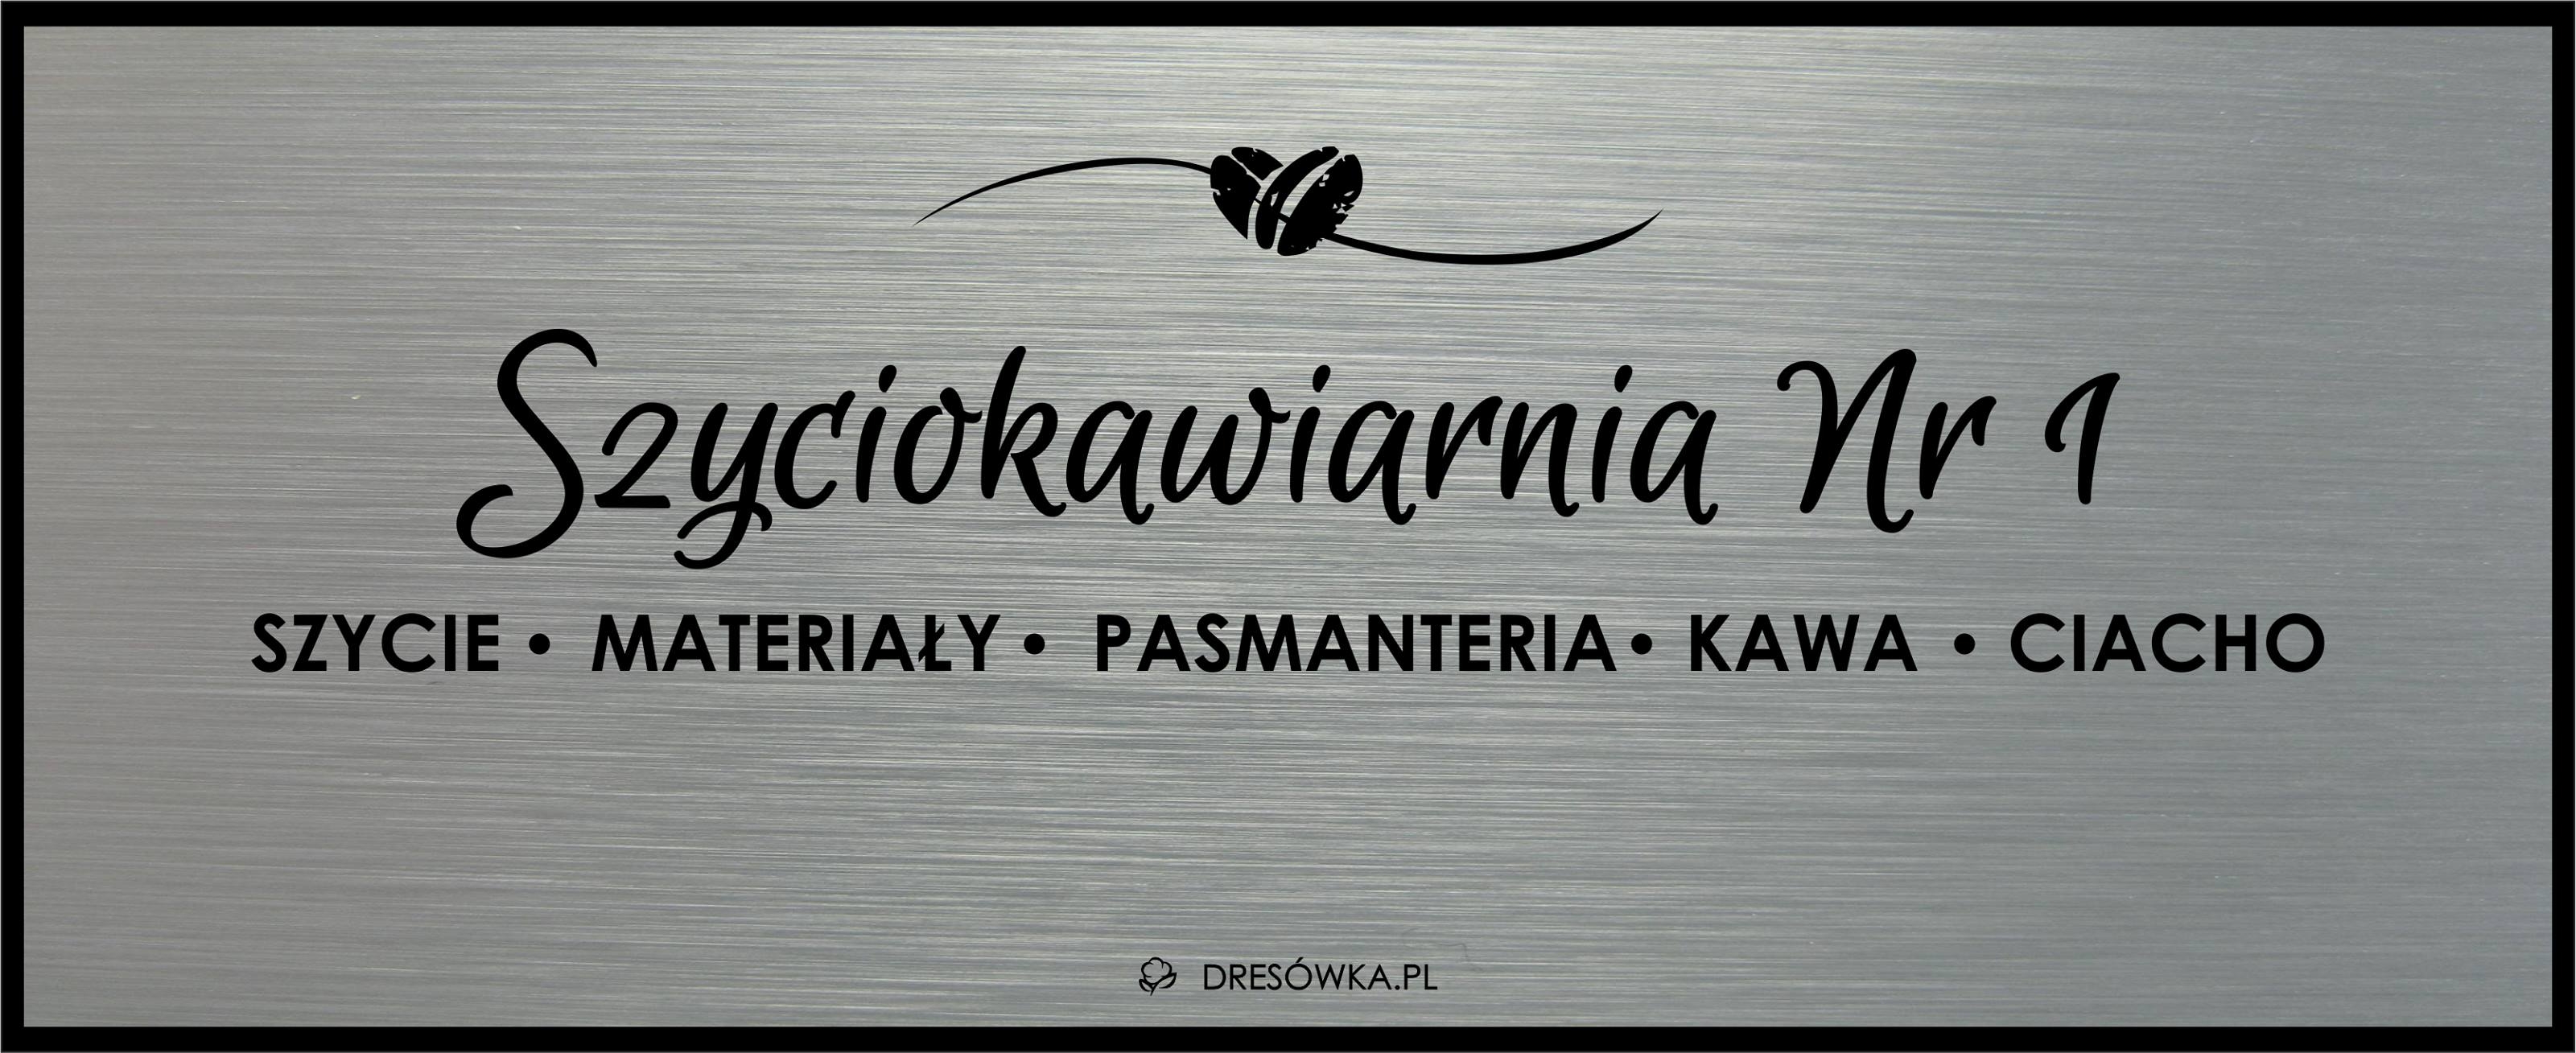 Szyciokawiarnia Wrocław